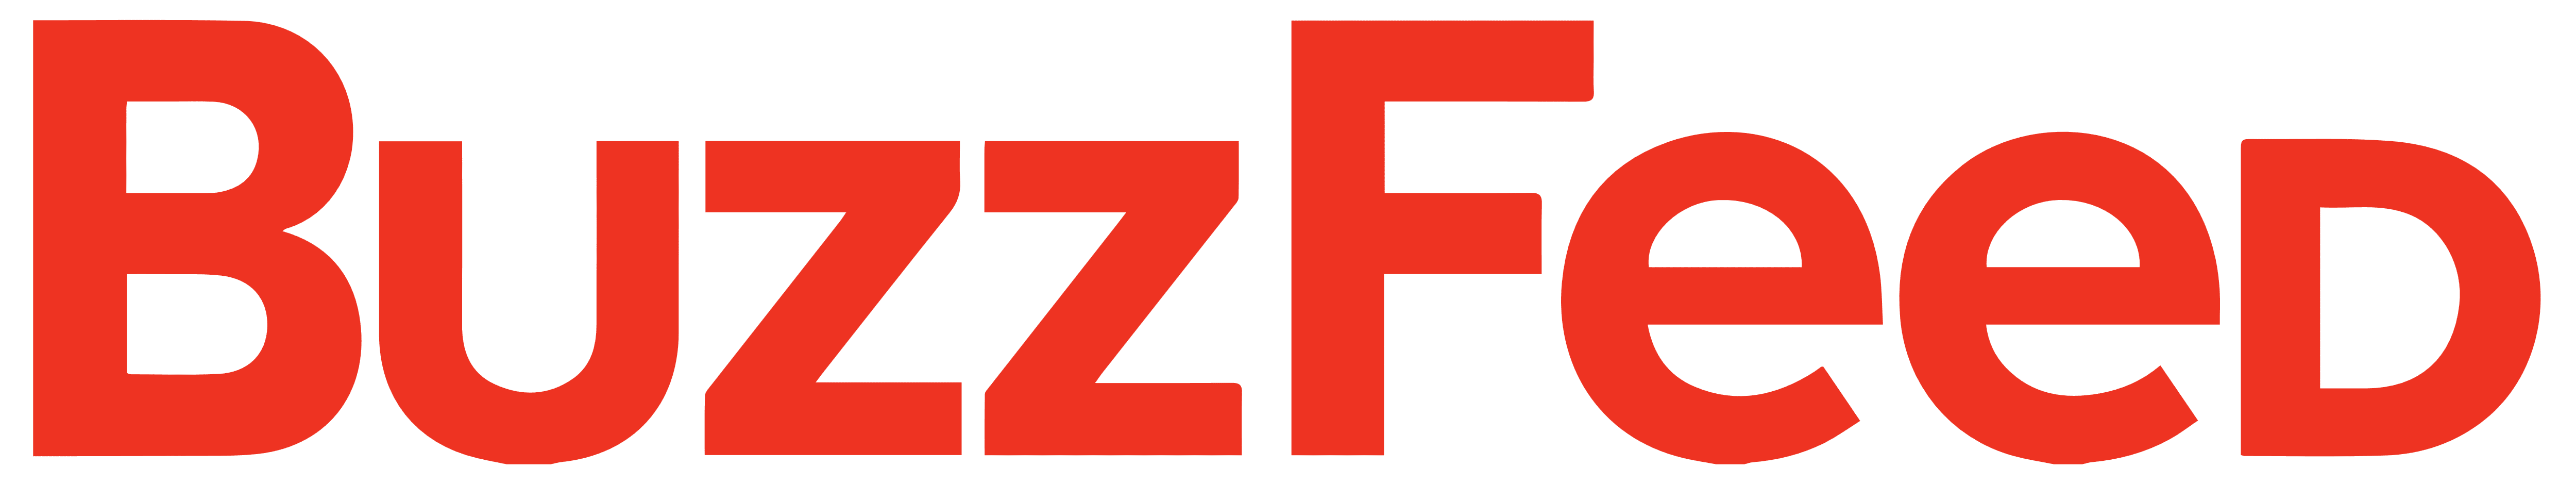 BuzzFeed logo Buzz Feed